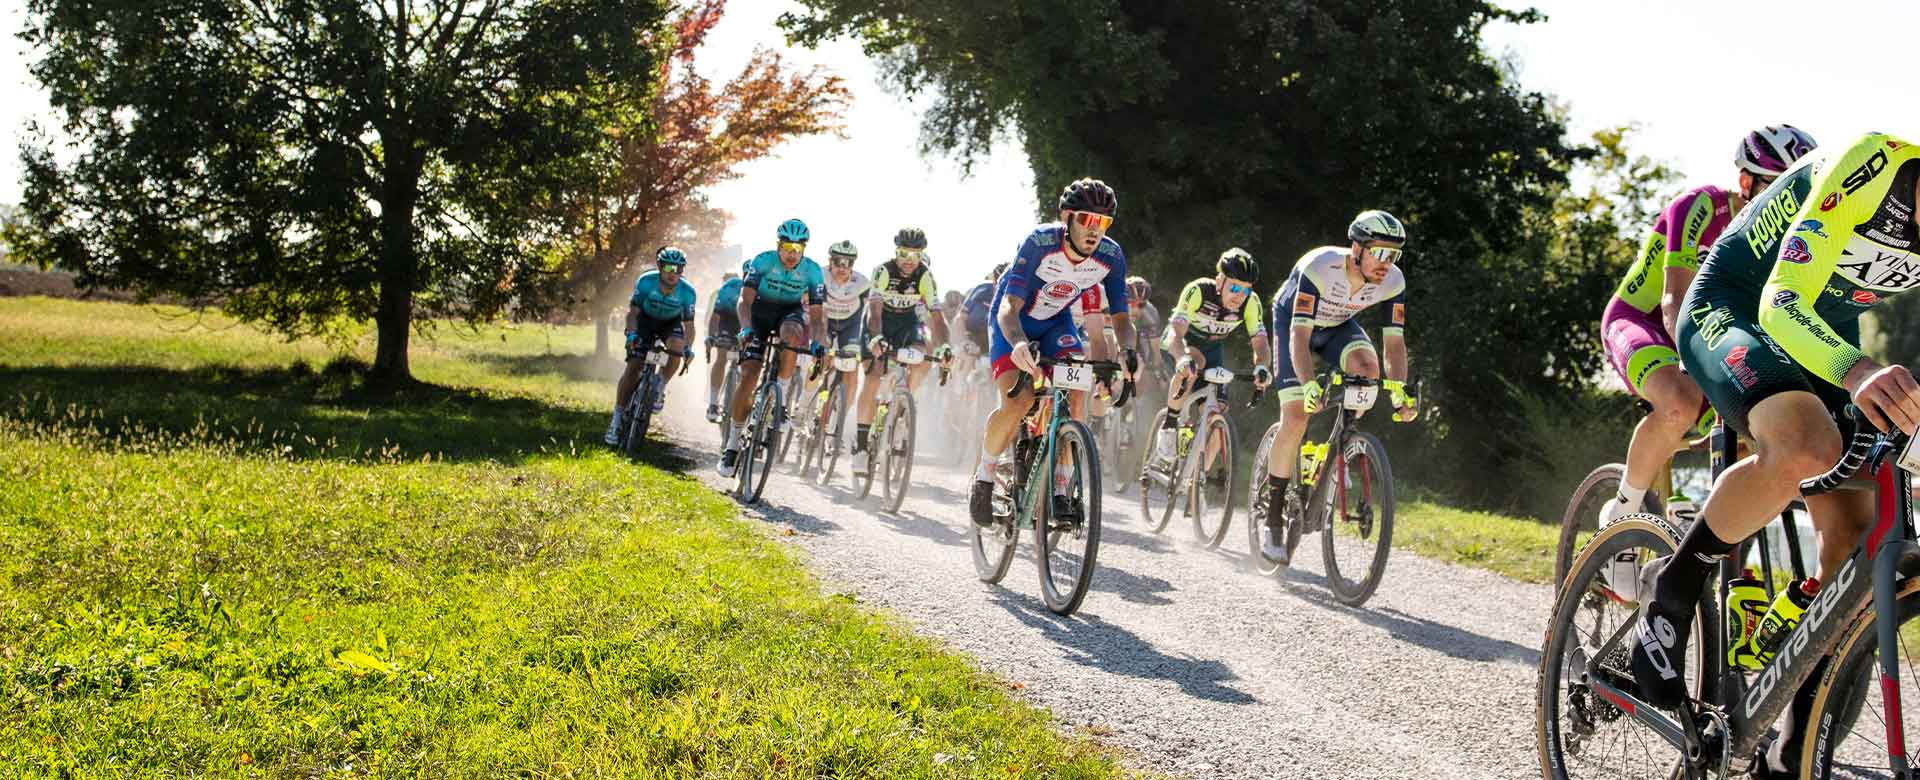 Ciclisti di Serenissima Gravel, corsa dell'evento Ride the dreamland